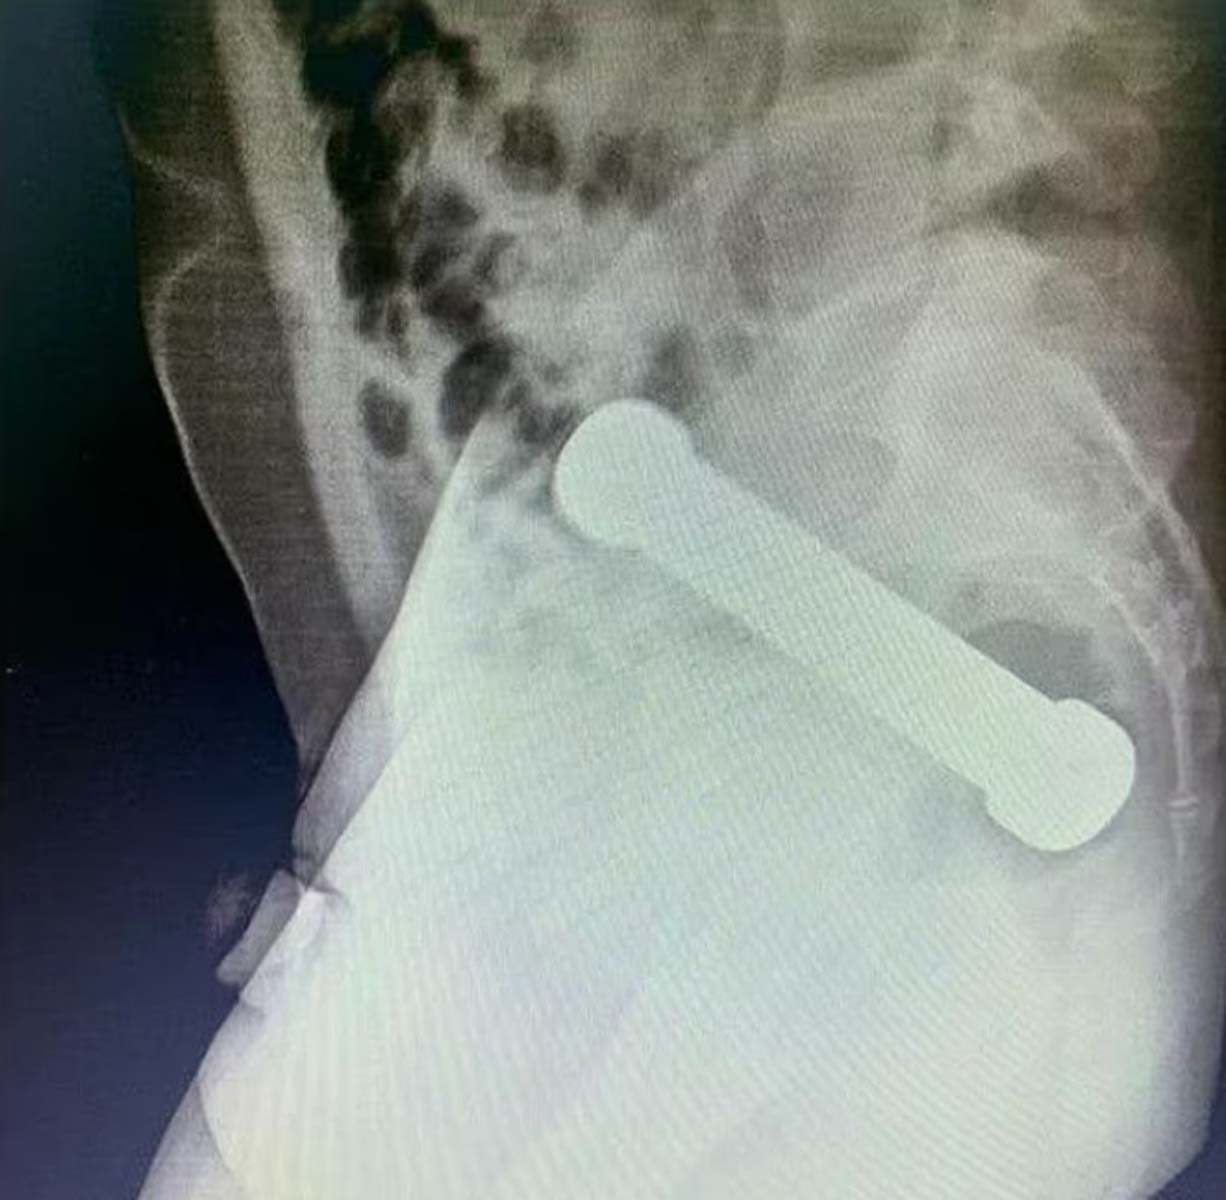 Röntgene bakan doktorlar gördüklerine inanamadı! 54 yaşındaki adam makatına 2 kg ağırlığında 20 cm dambıl soktu 